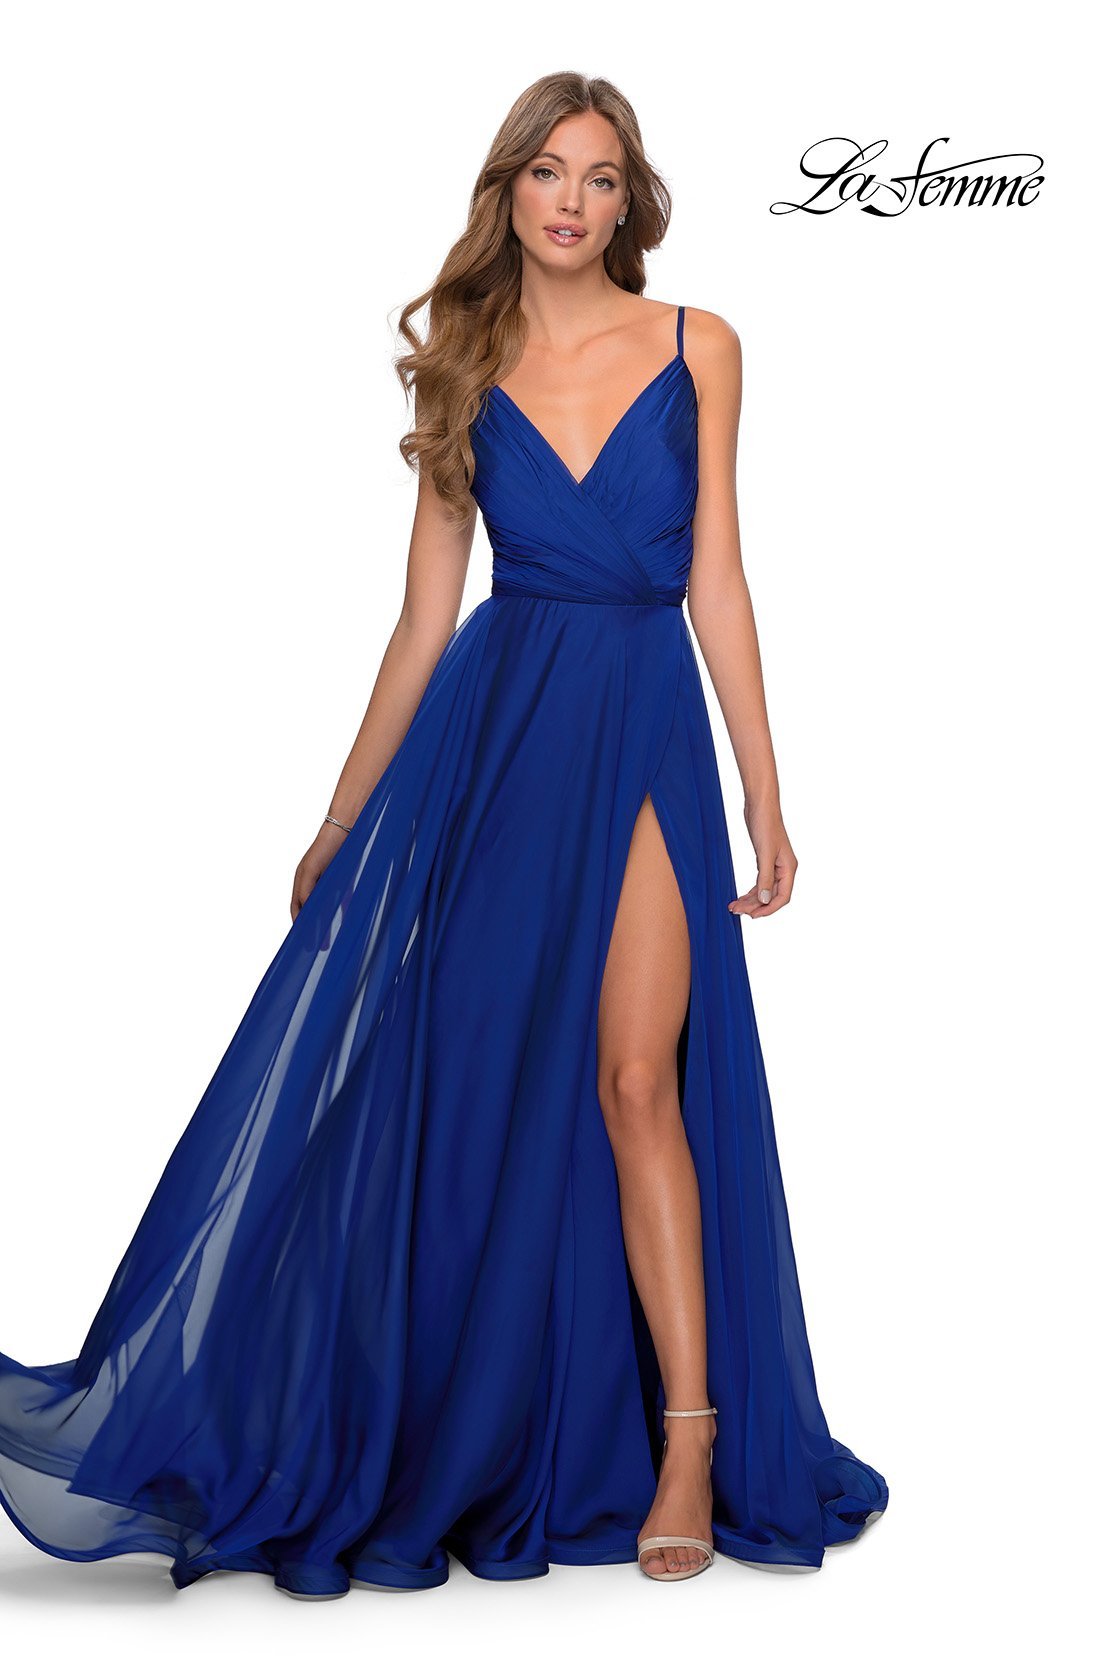 La Femme 28611 dress images in these colors: Cloud Blue, Garnet, Marine Blue, Mauve.